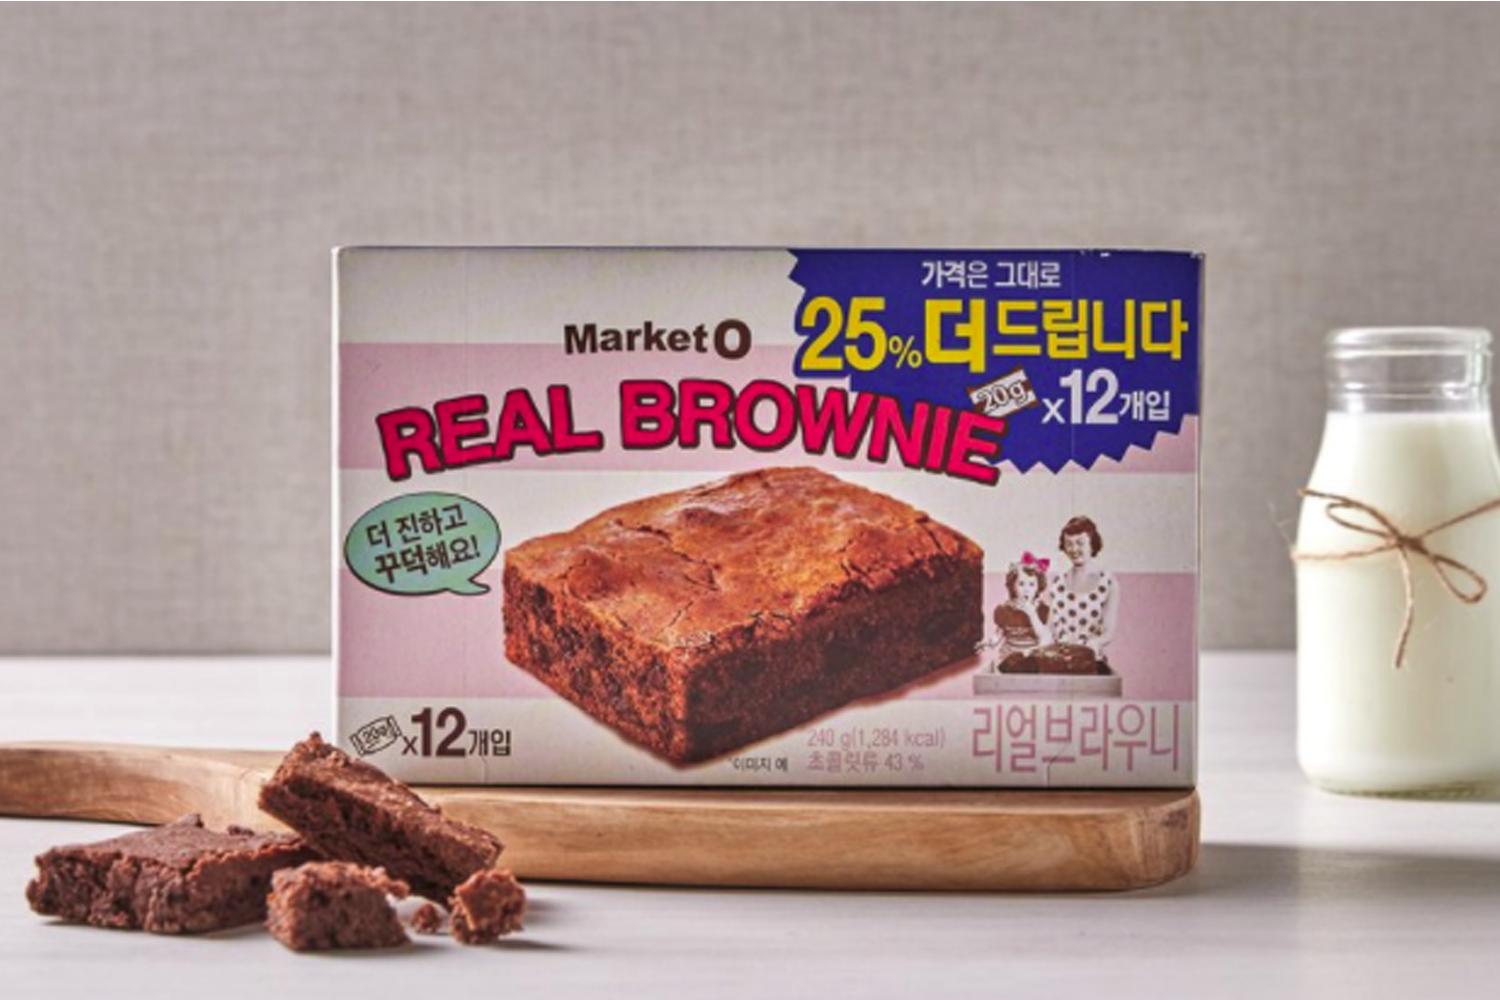 Real Brownie Original (6 packs)